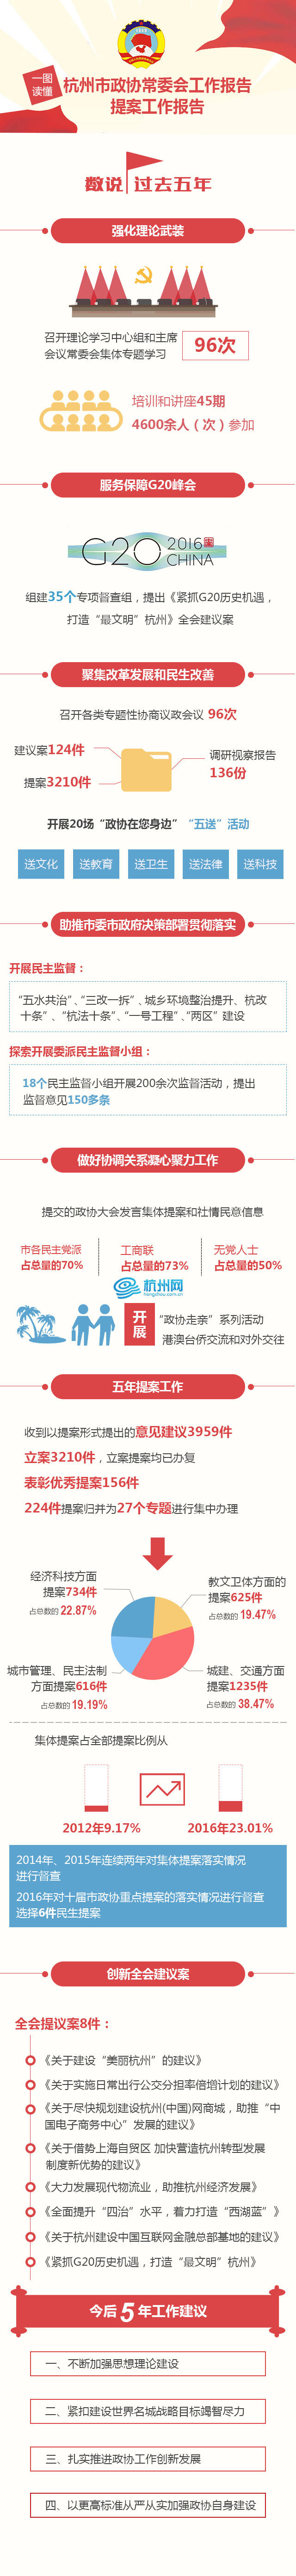 一图读懂—杭州市政协常委会会工作报告